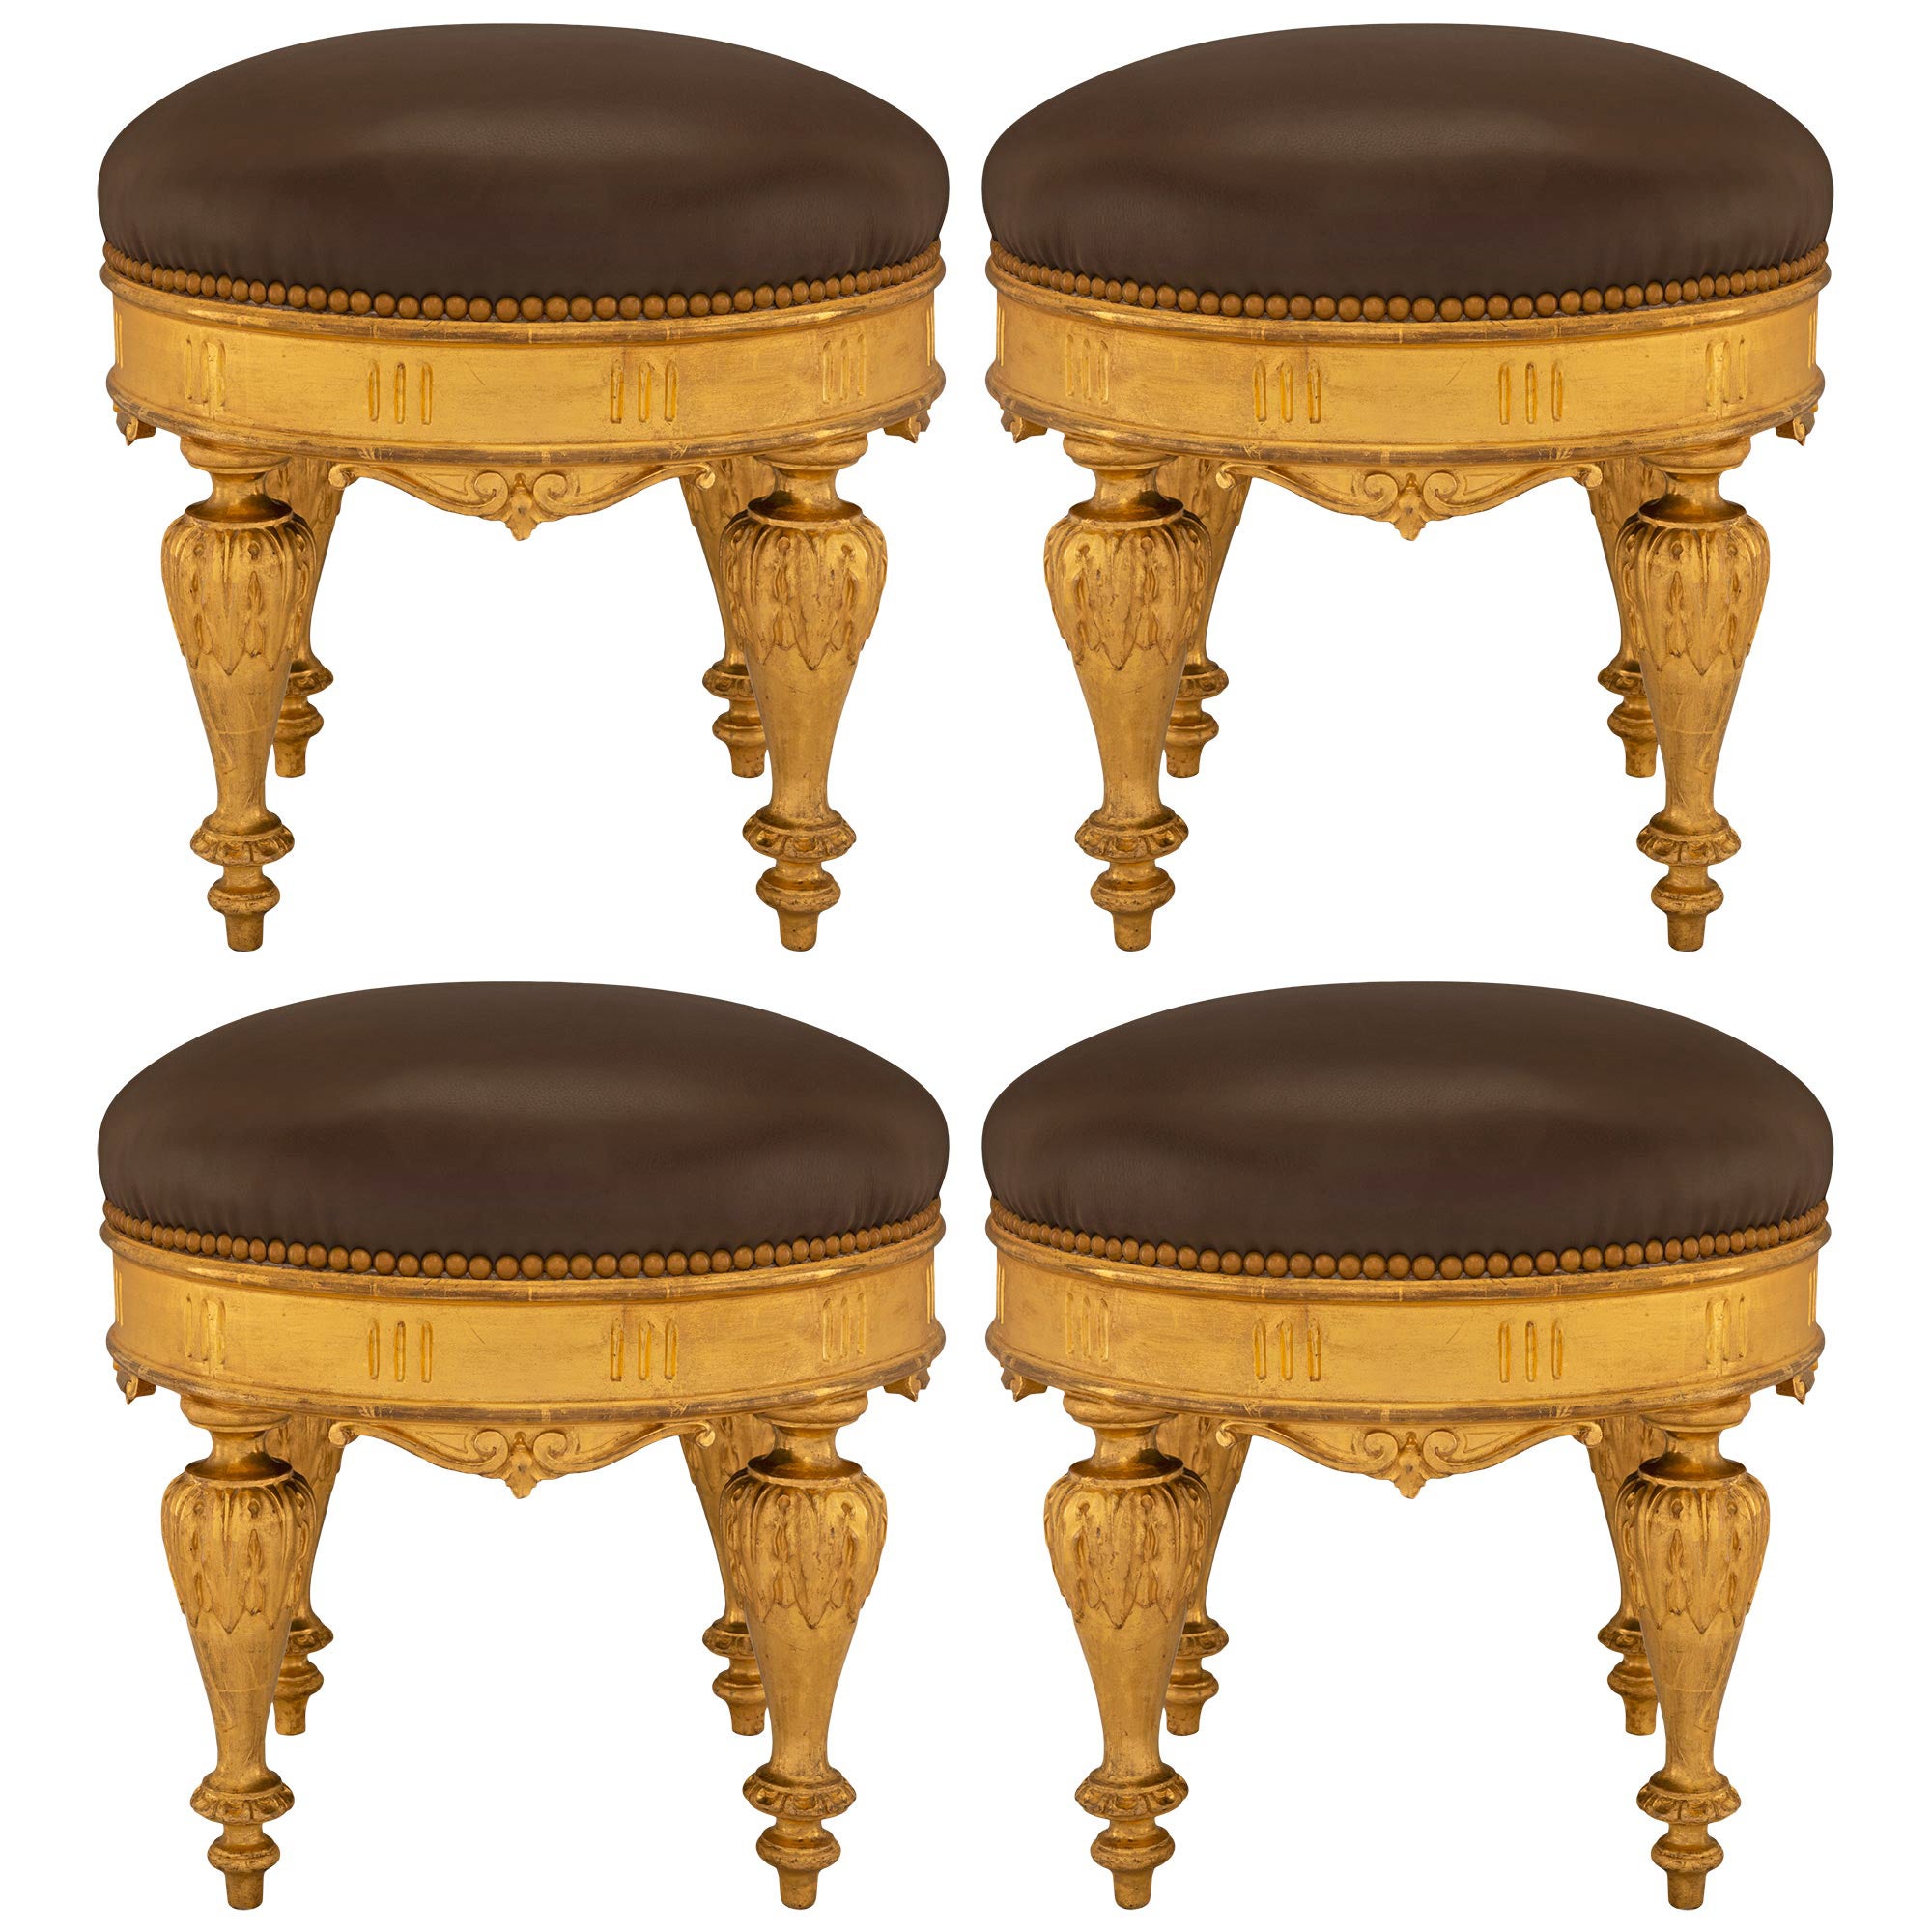 Ensemble de quatre bancs circulaires en bois doré de style Louis XVI du XIXe siècle